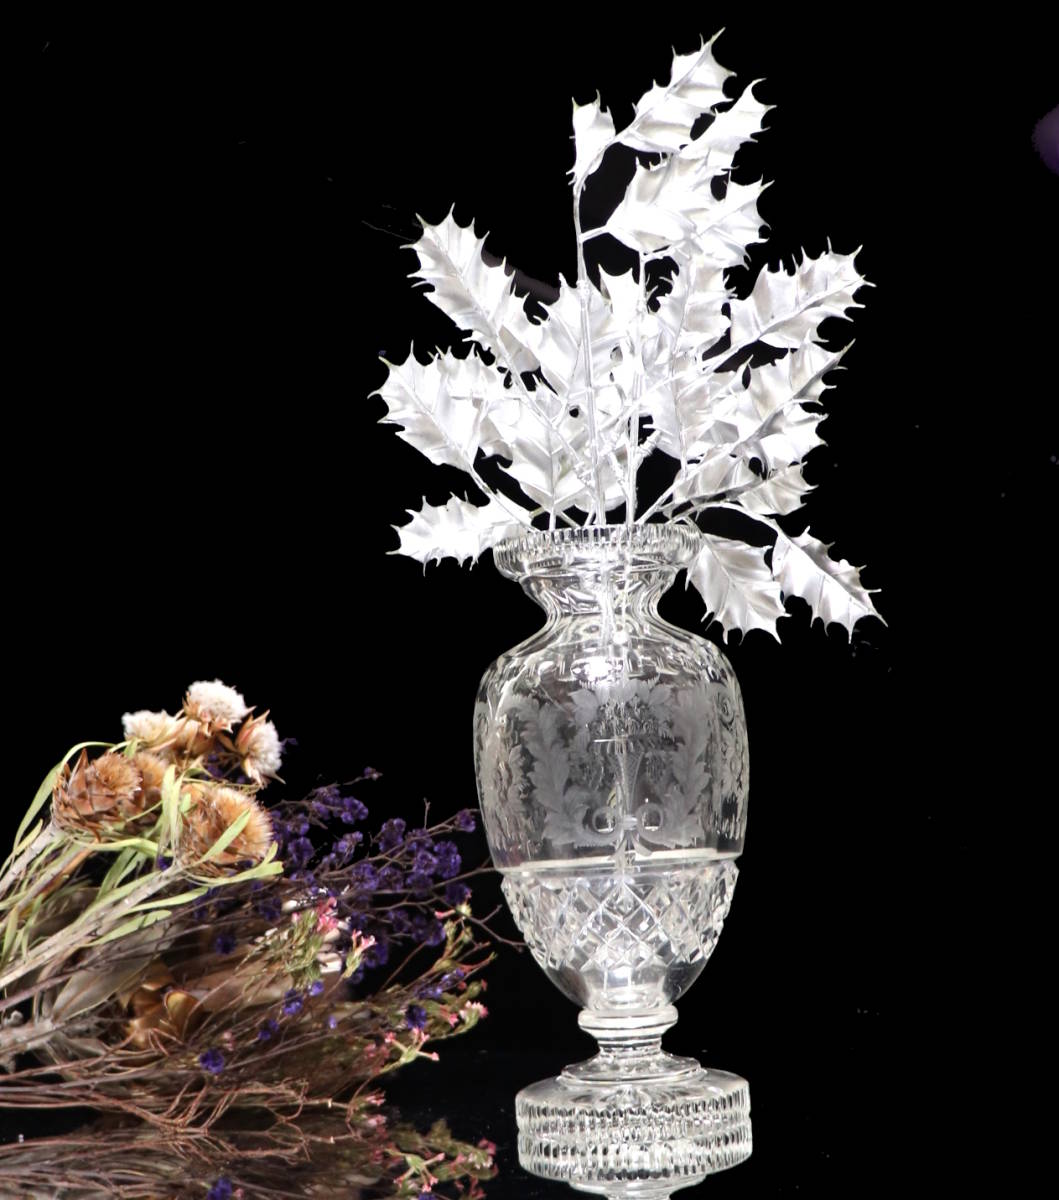 オールド・バカラ (BACCARAT) アールヌーヴォー 花瓶 グラヴュール ルネッサンス 草花 ブーケ 花器 壺 オブジェ インテリア グラヴィール - 7